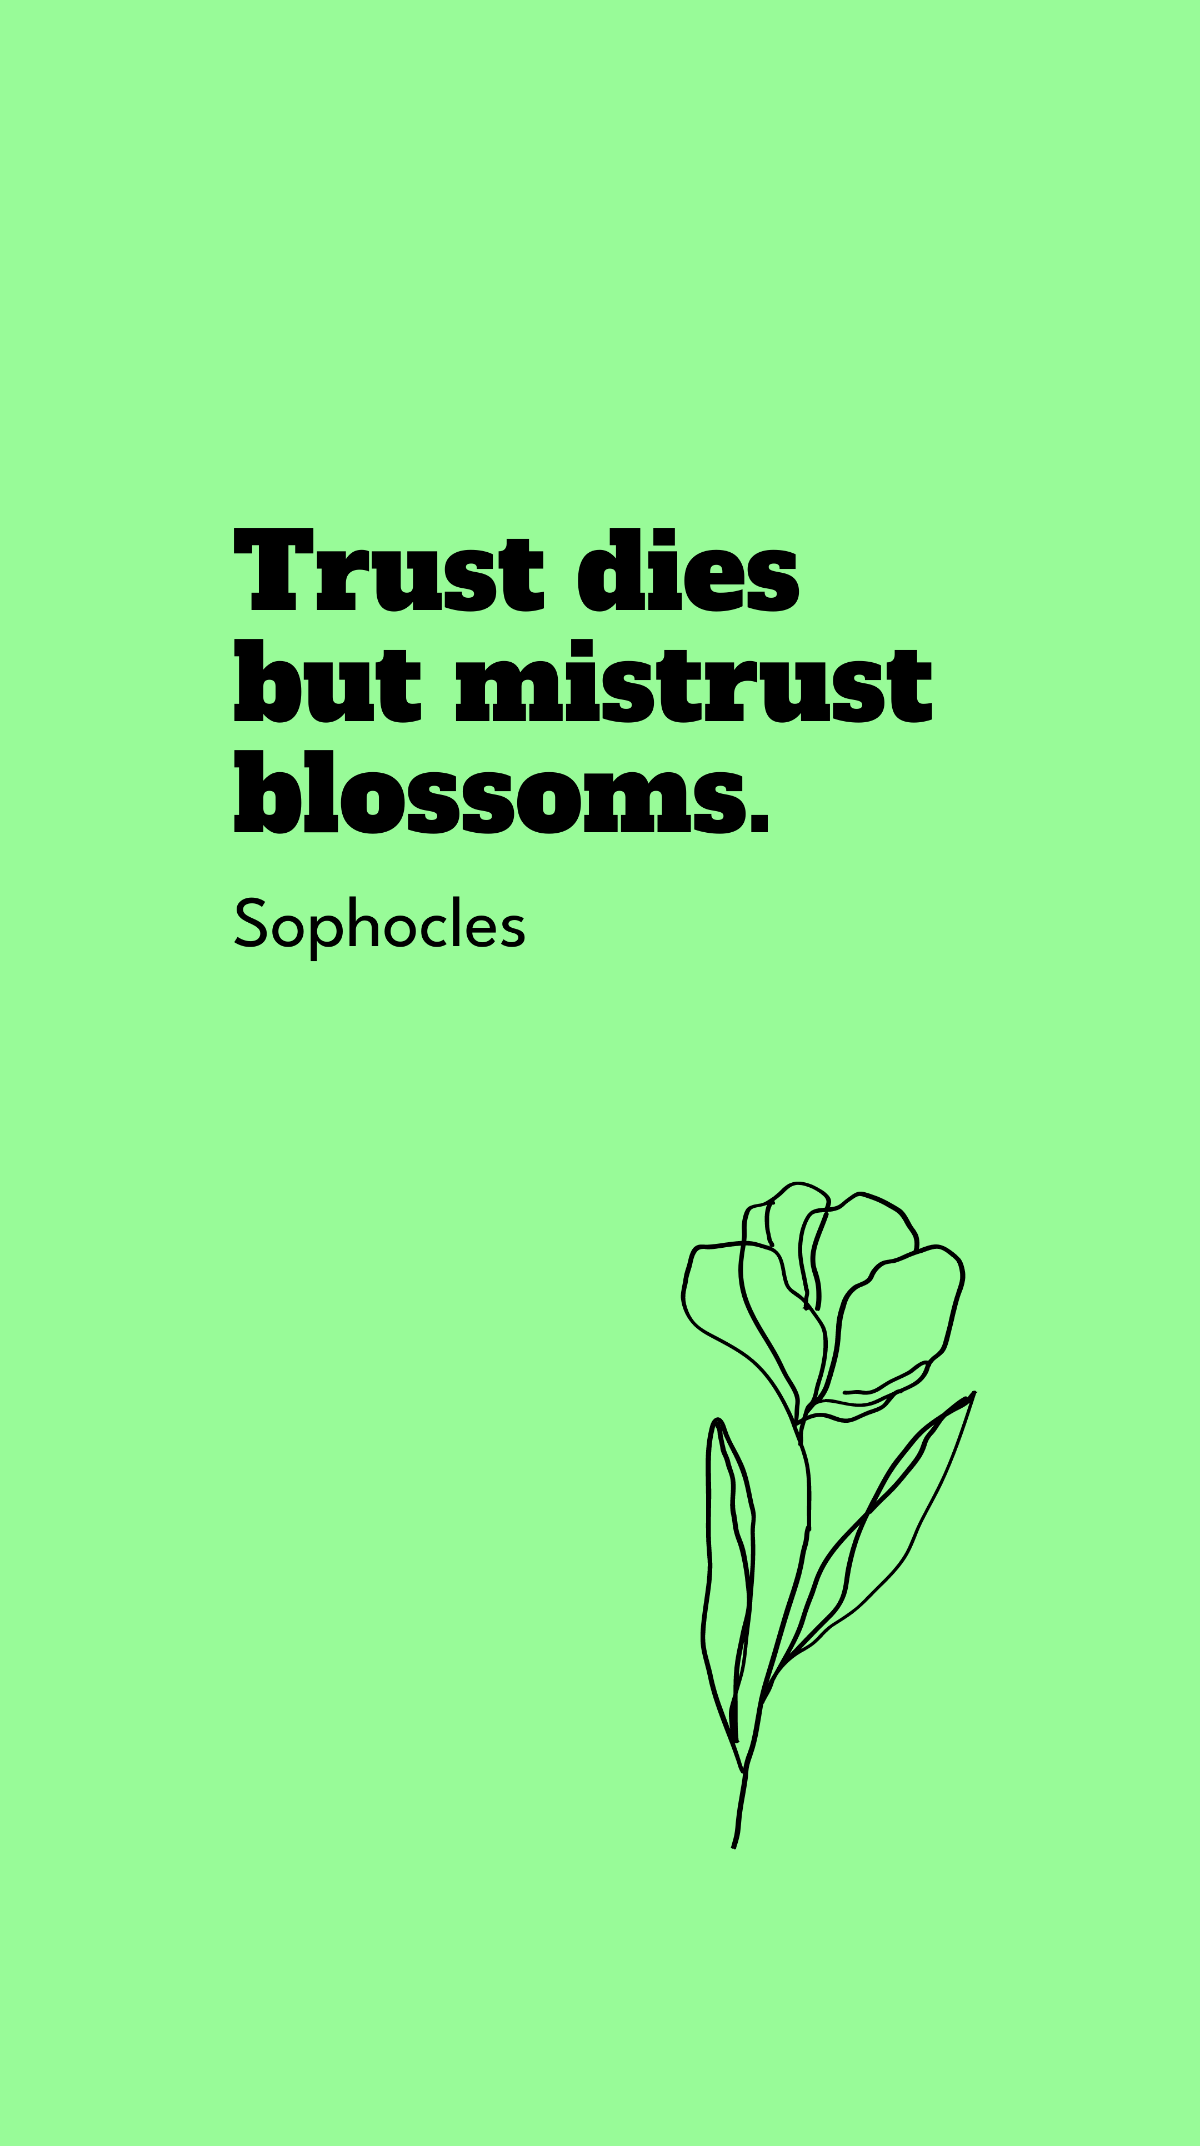 Sophocles - Trust dies but mistrust blossoms.